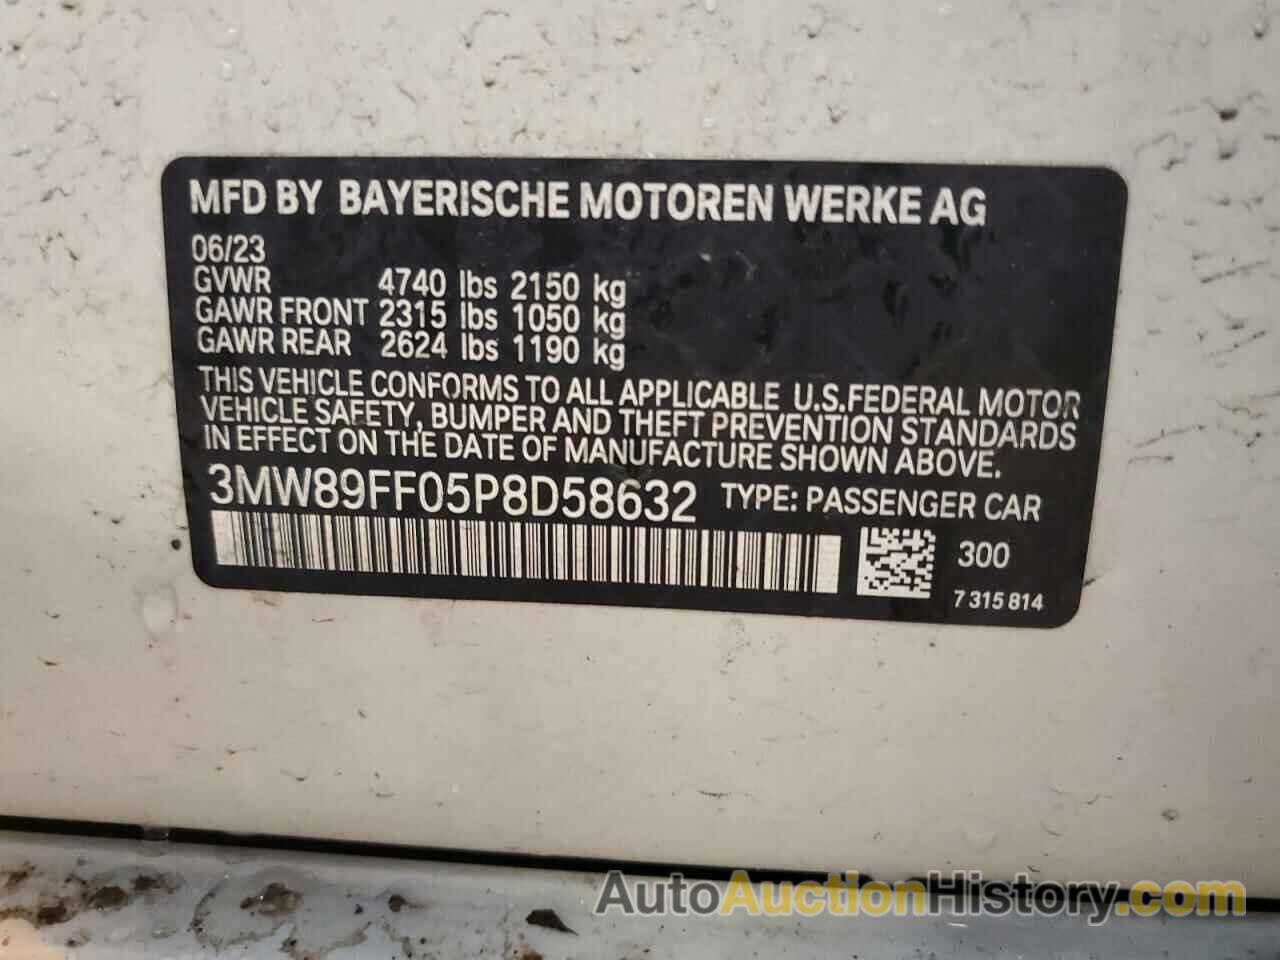 BMW 3 SERIES, 3MW89FF05P8D58632